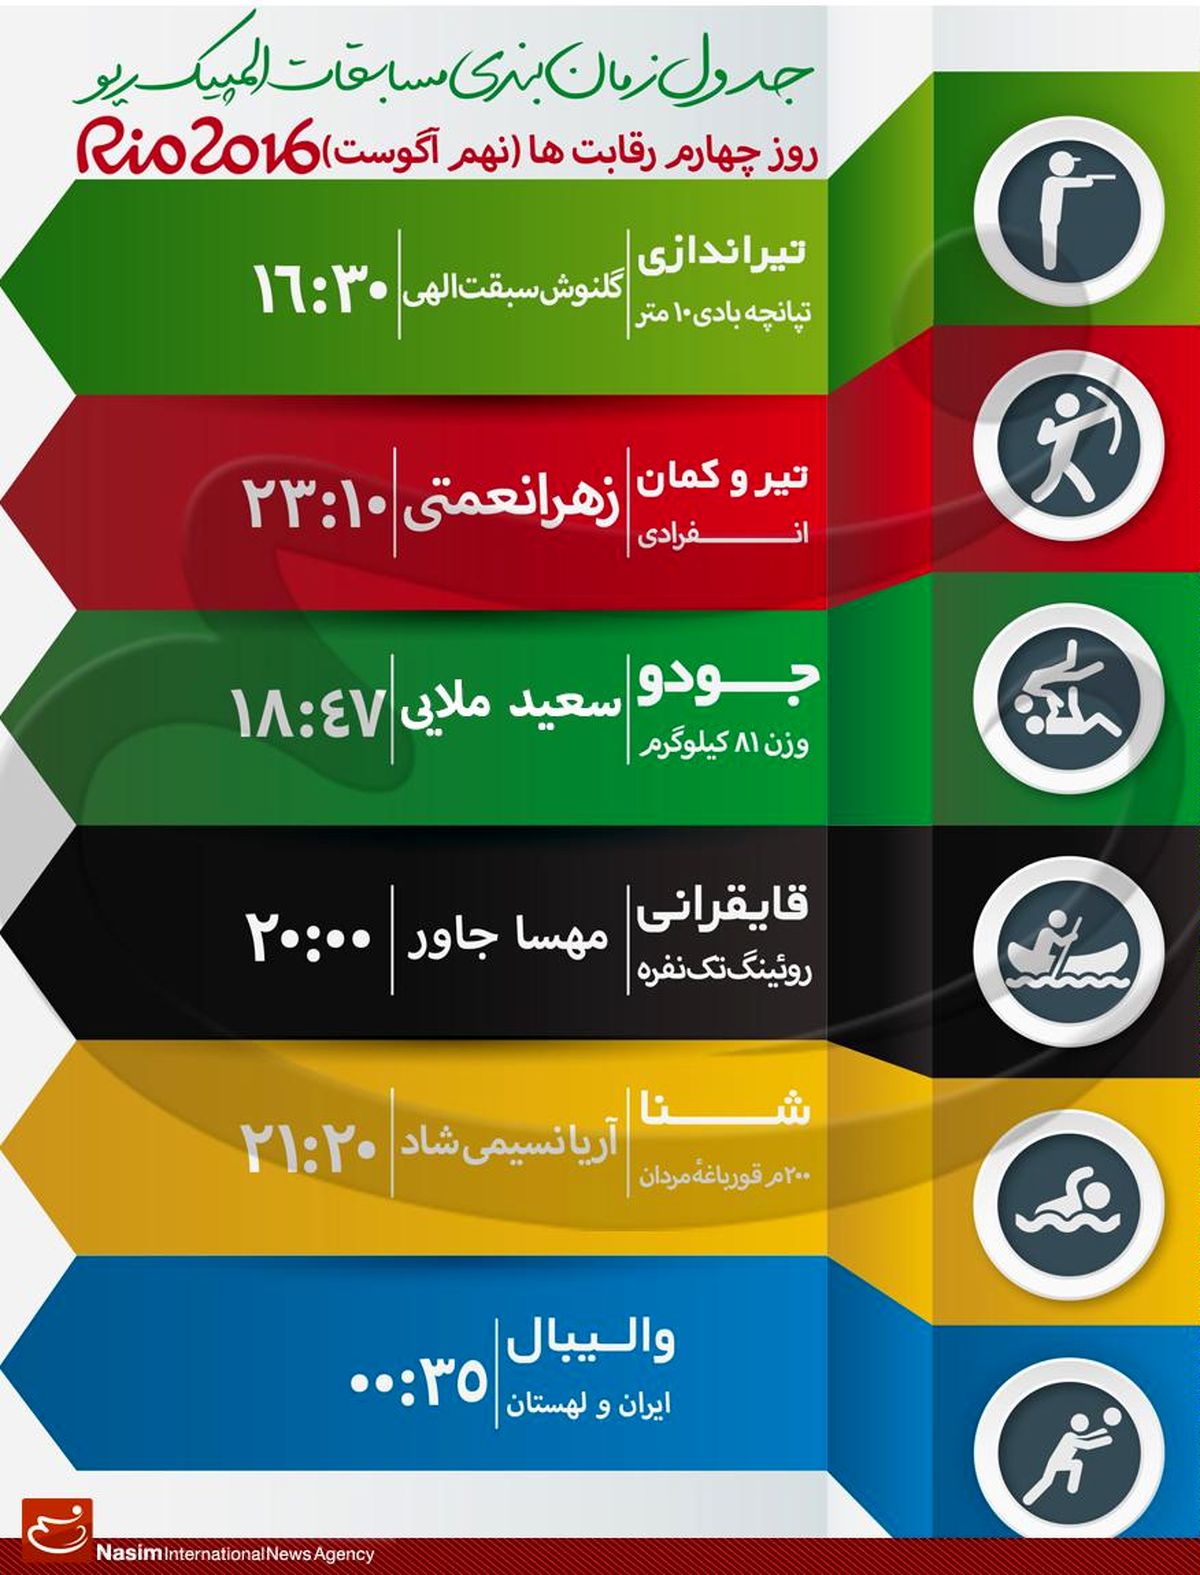 جدول زمانبندی مسابقات نمایندگان ایران در "روز چهارم" المپیک ریو